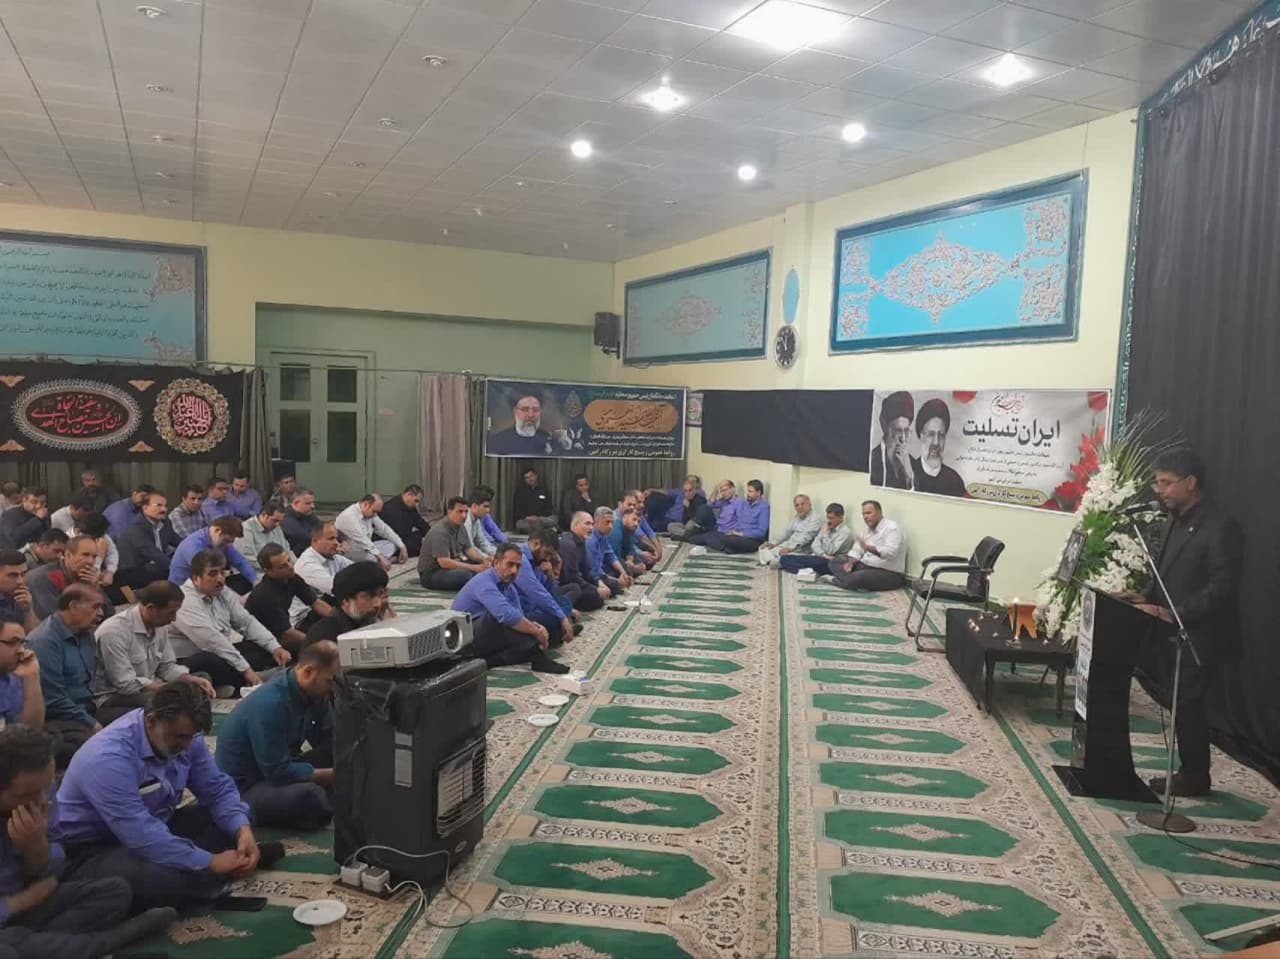 مراسم گرامیداشت یاد و خاطره رئیس جمهور شهید و همراهان شهیدش در نیروگاه رامین اهواز برگزار شد.